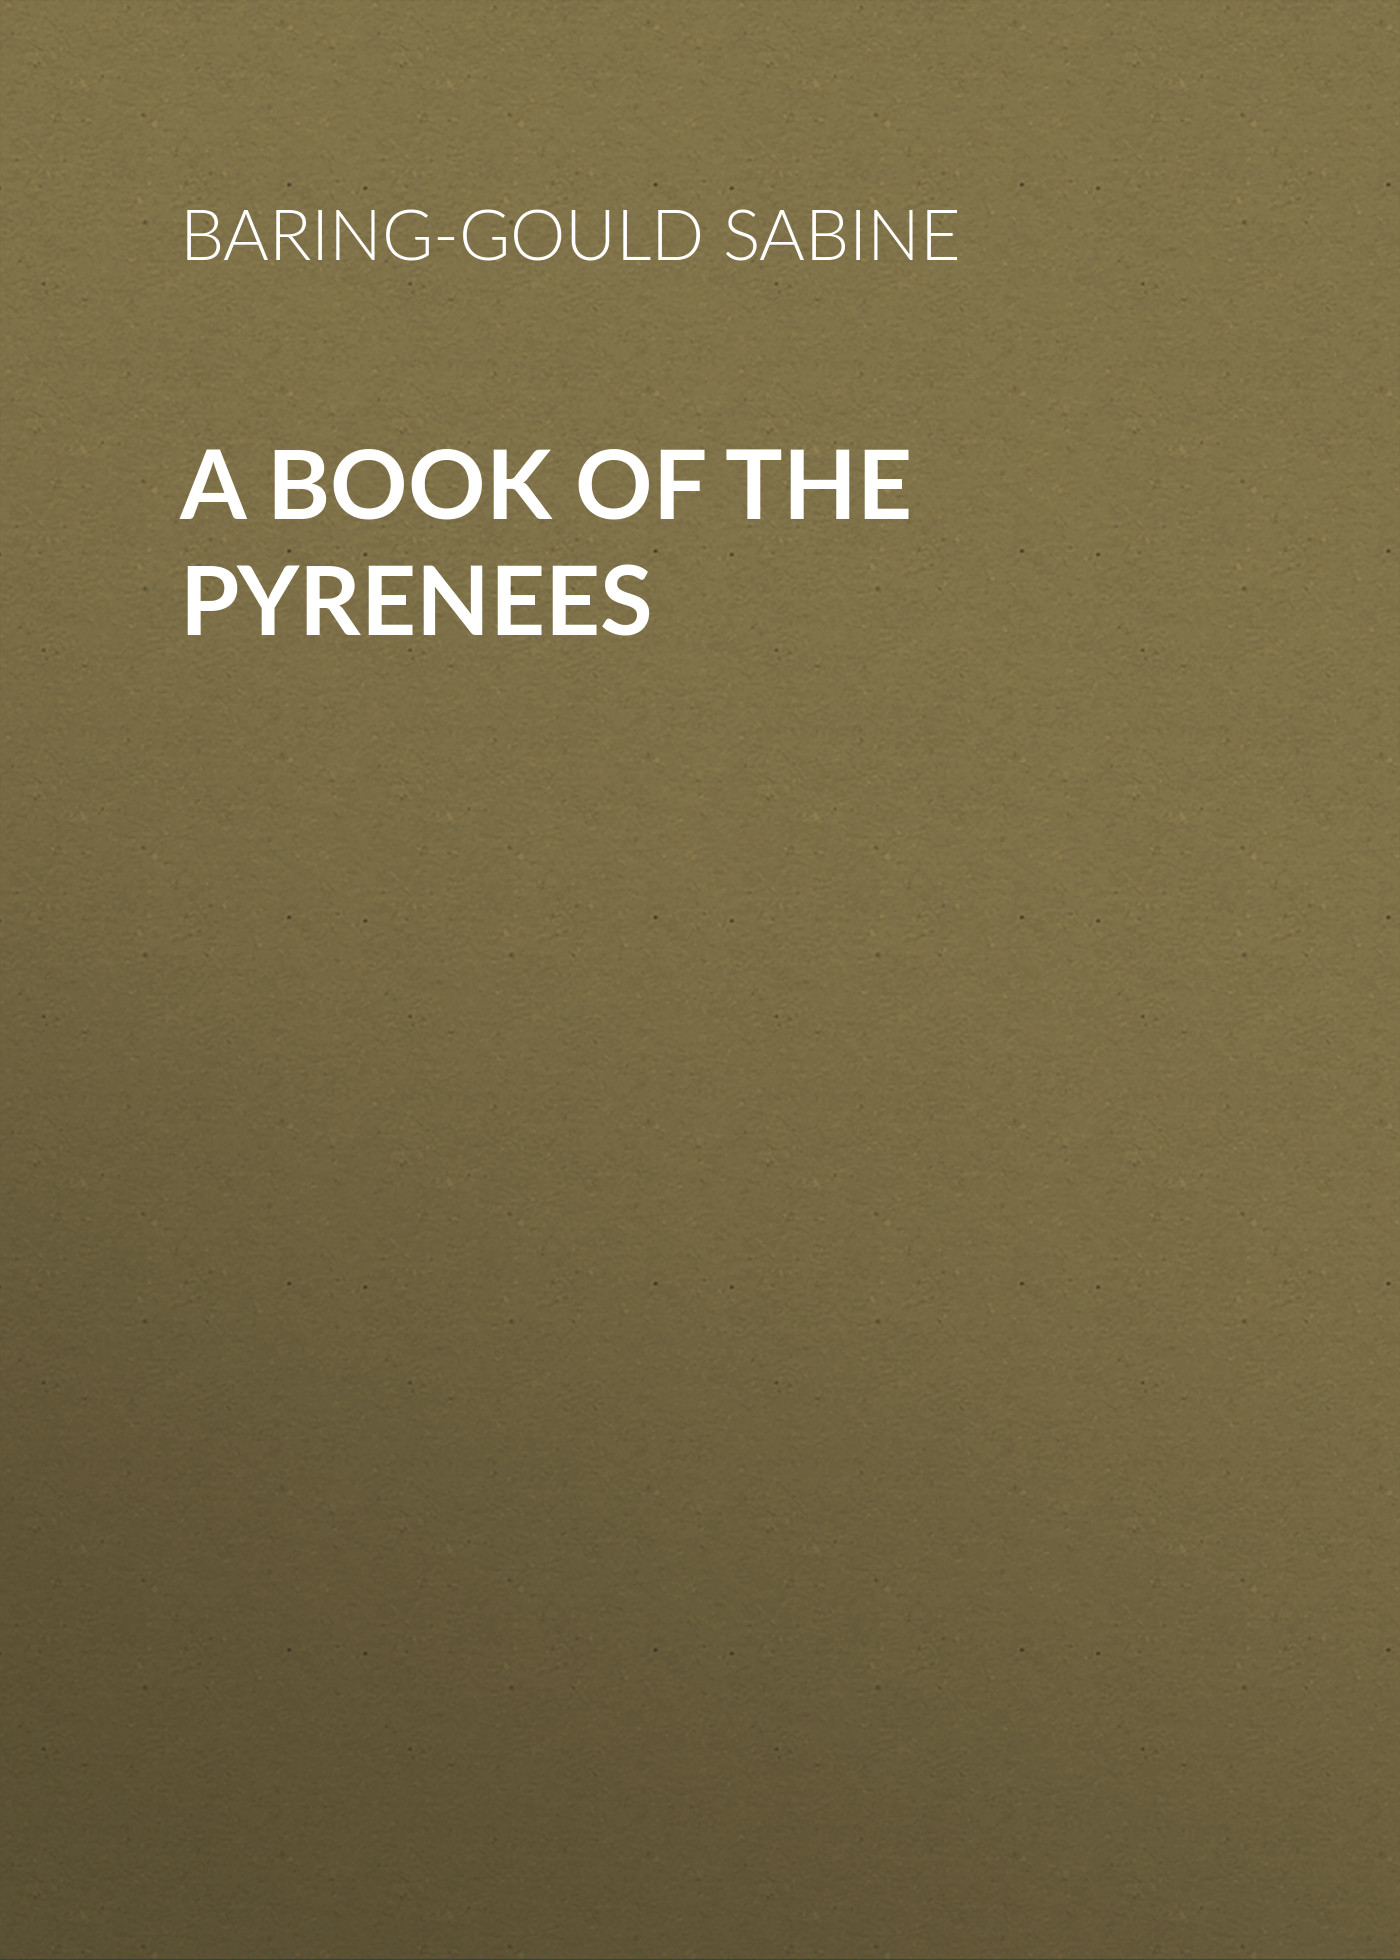 Книга A Book of the Pyrenees из серии , созданная Sabine Baring-Gould, может относится к жанру Зарубежная старинная литература, Зарубежная классика. Стоимость электронной книги A Book of the Pyrenees с идентификатором 24177172 составляет 0 руб.